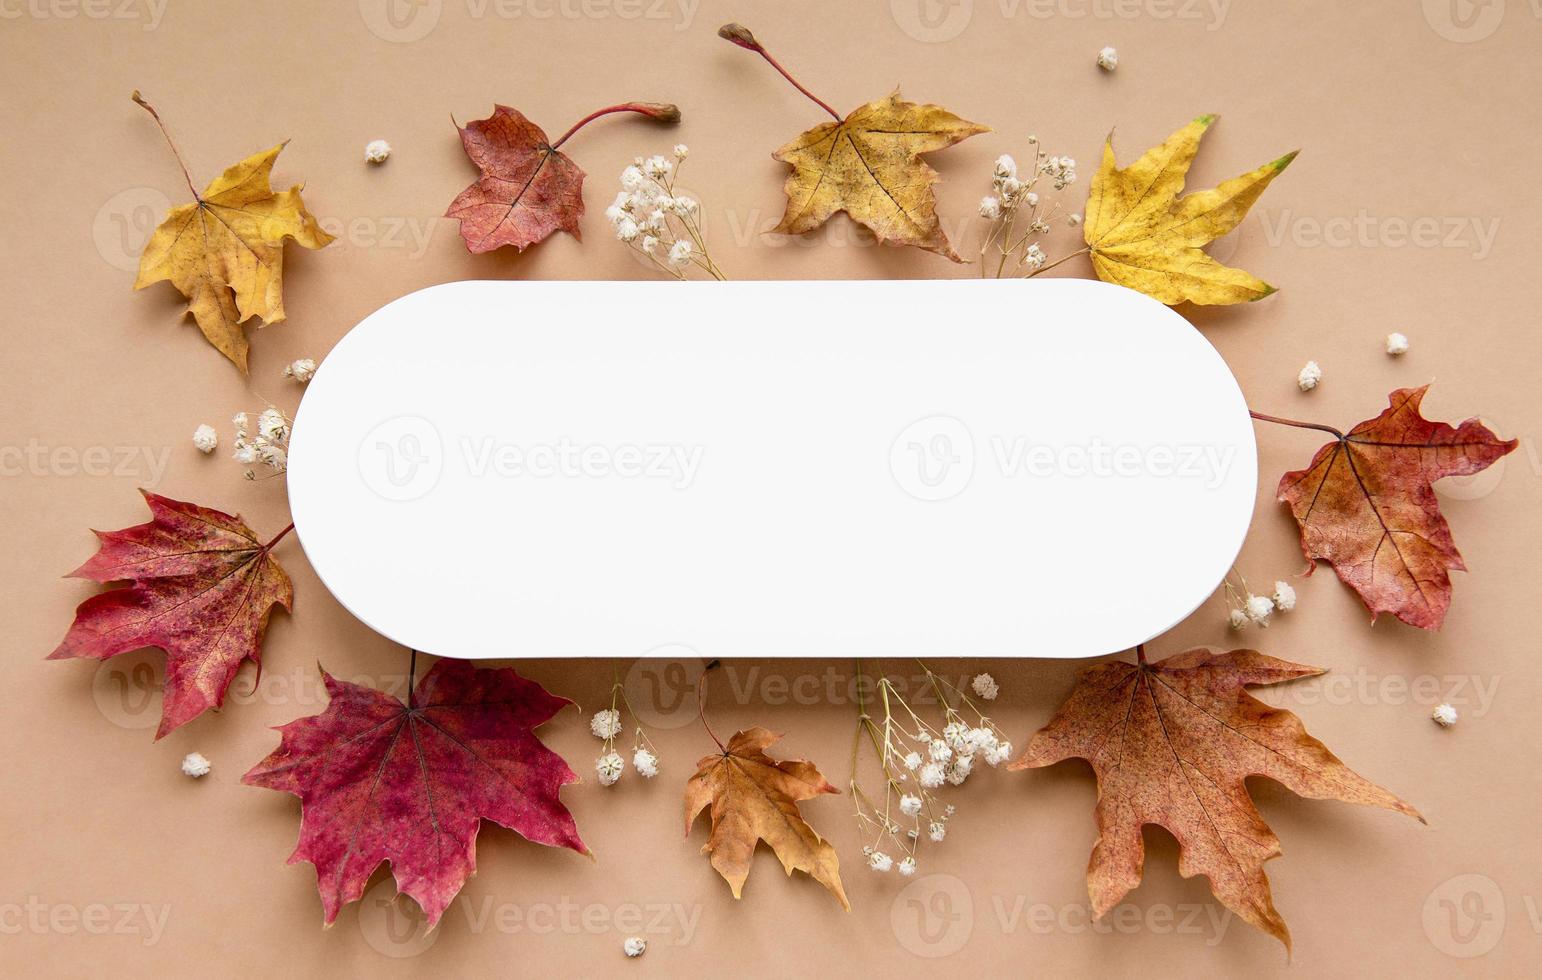 Herbst Komposition. Papier blanko, getrocknete Blumen und Blätter foto